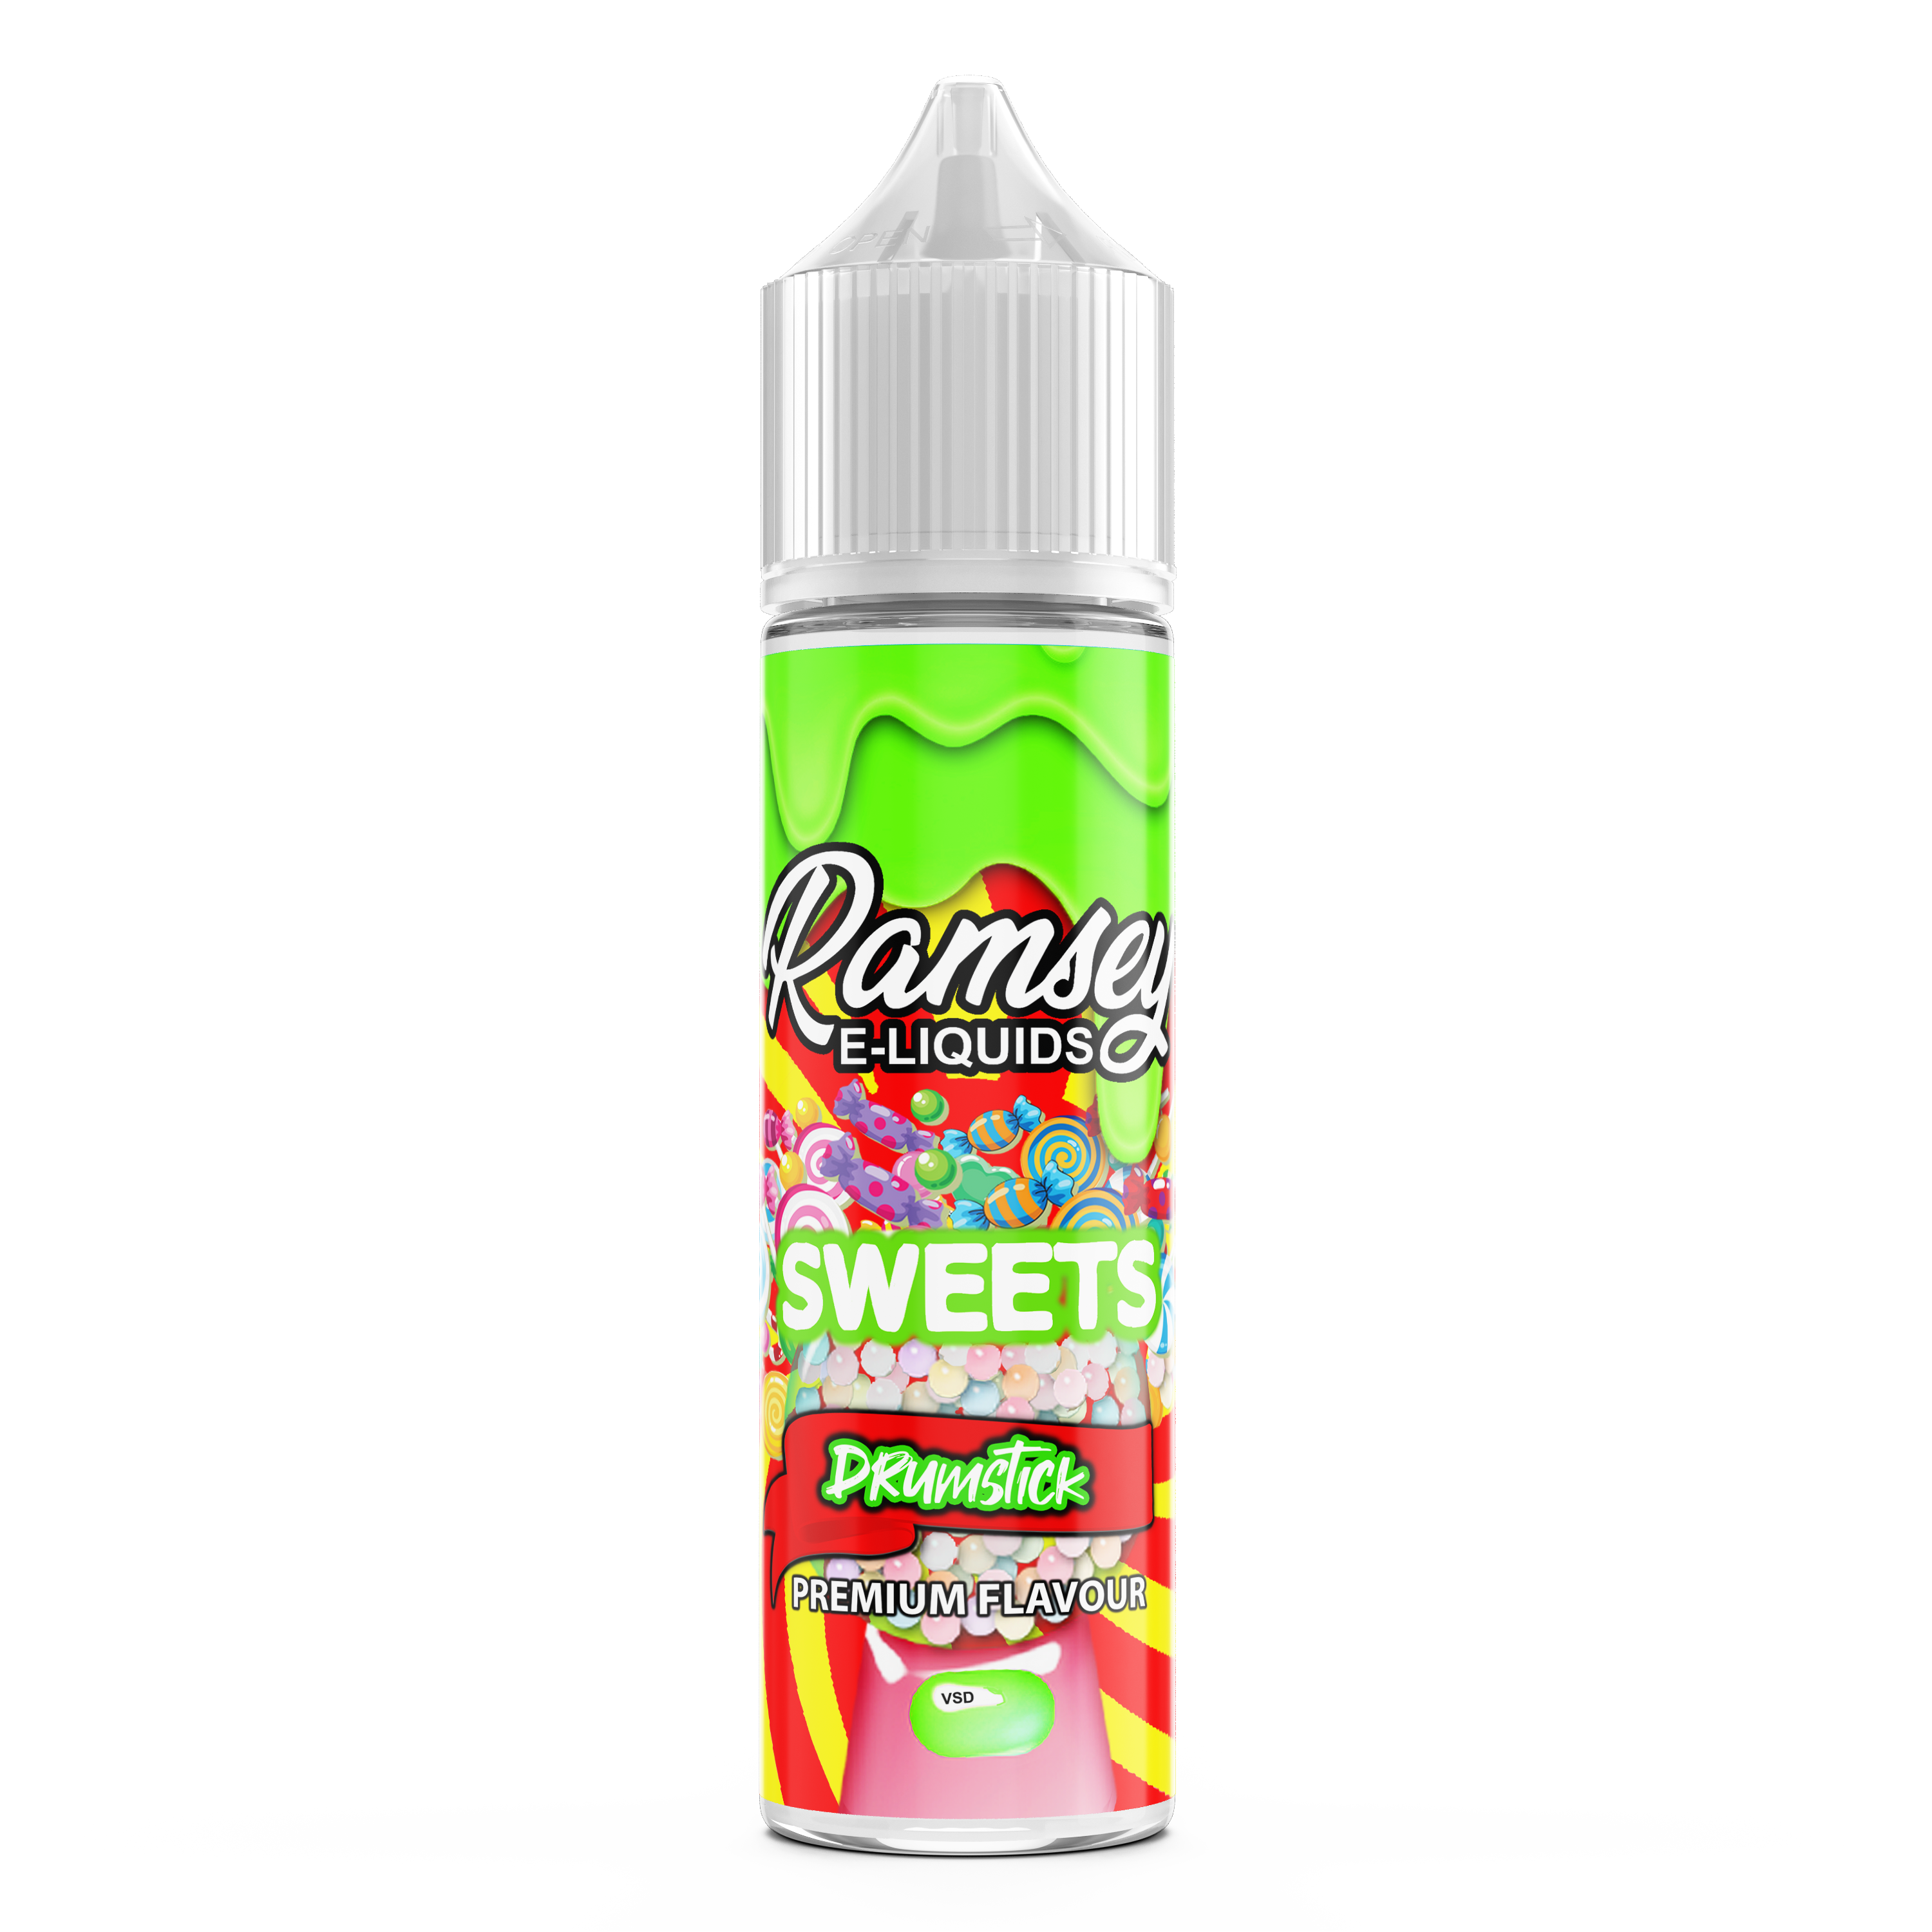 Ramsey E-Liquids Sweets Drumstick 0mg 50ml Shortfill E-Liquid